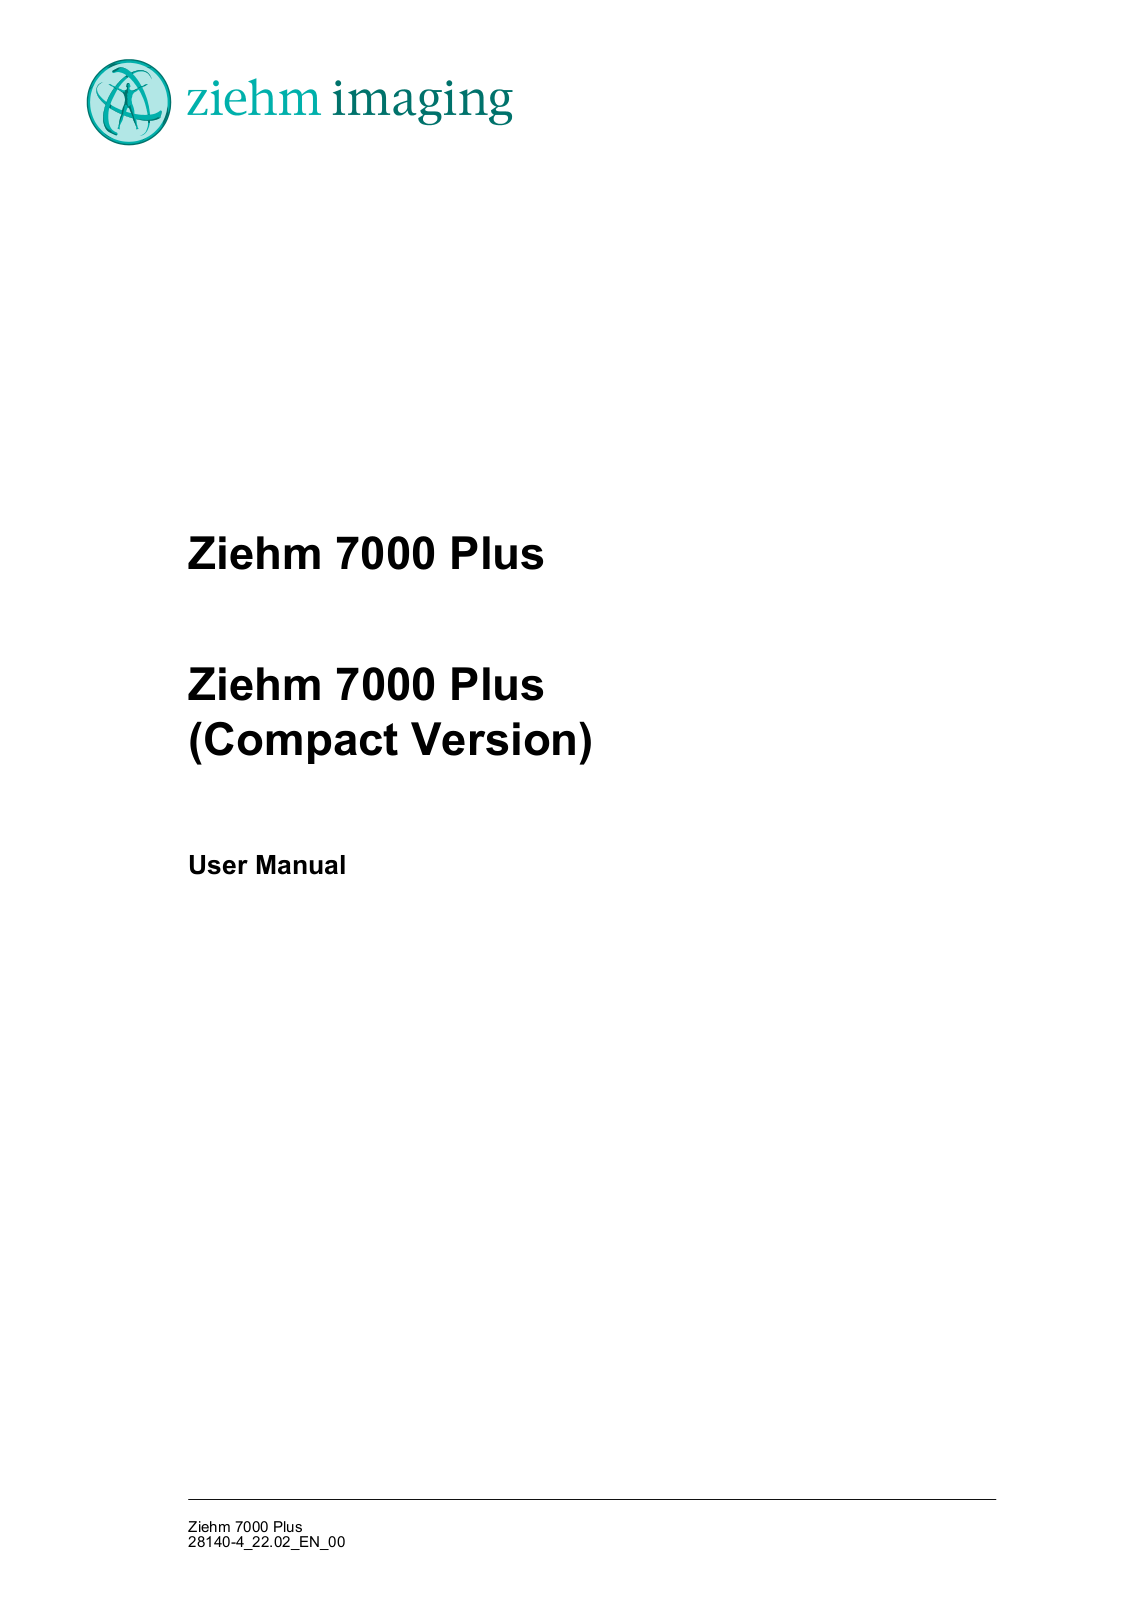 Ziehm 7000 Plus C-Arm User Manual